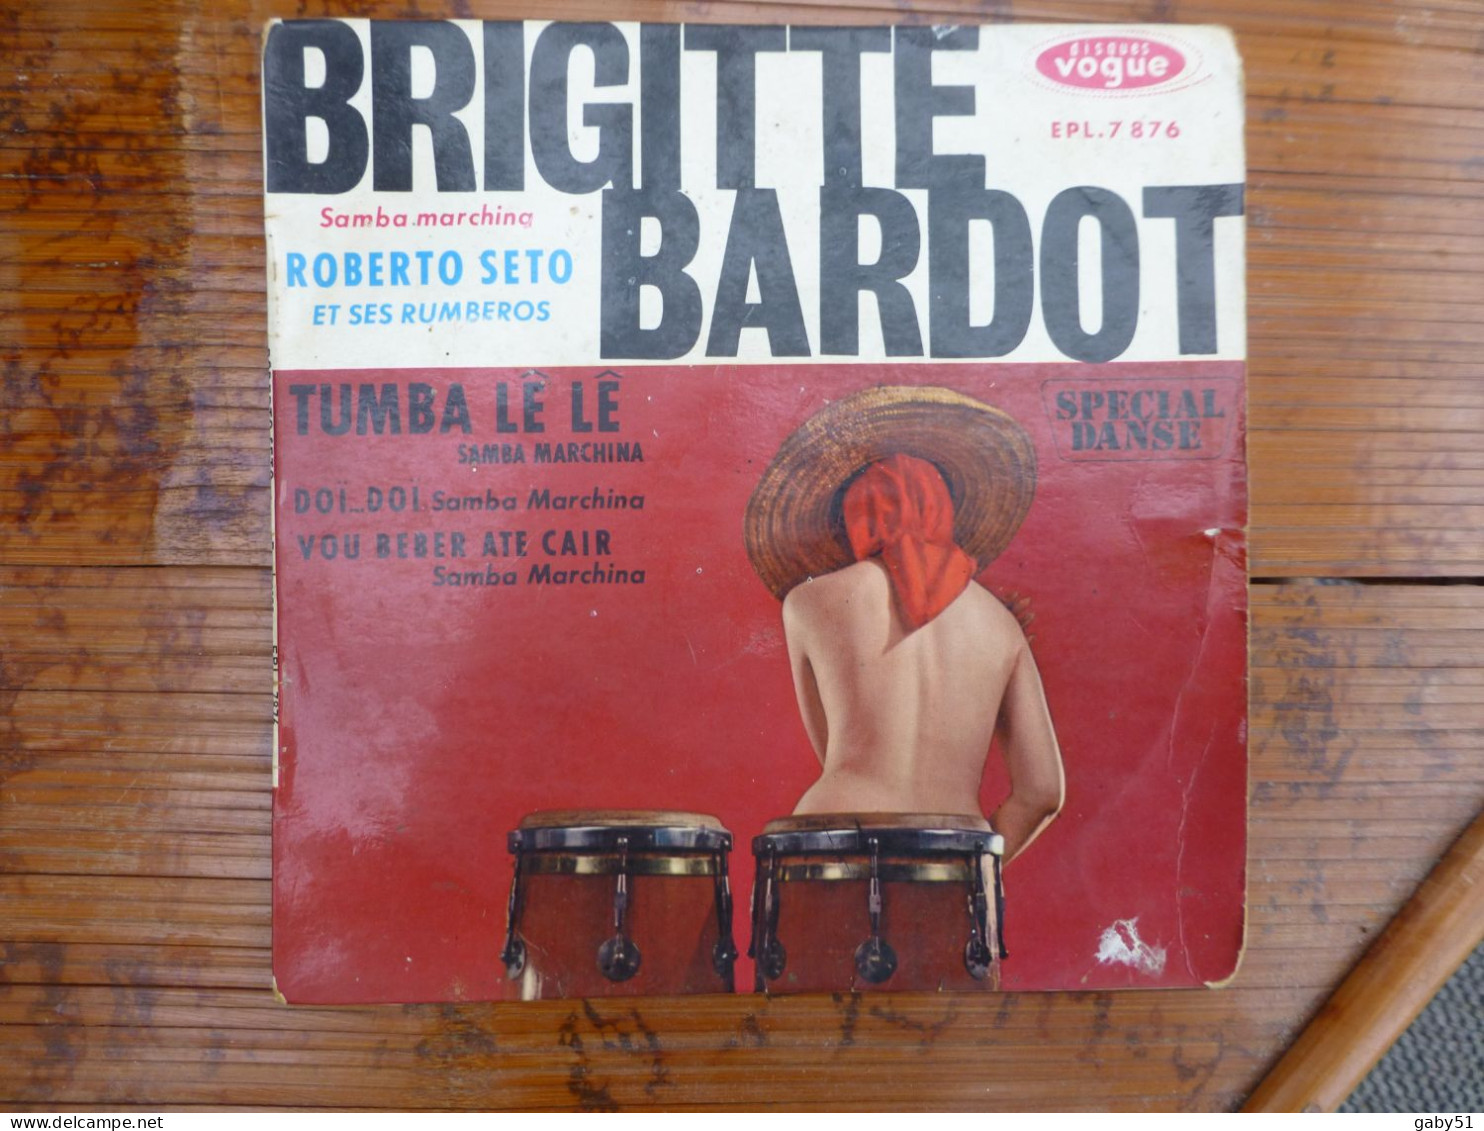 Brigitte Bardot Roberto Seto, Tumba Le Le Vogue EPL 7876 - 45 T - Maxi-Single